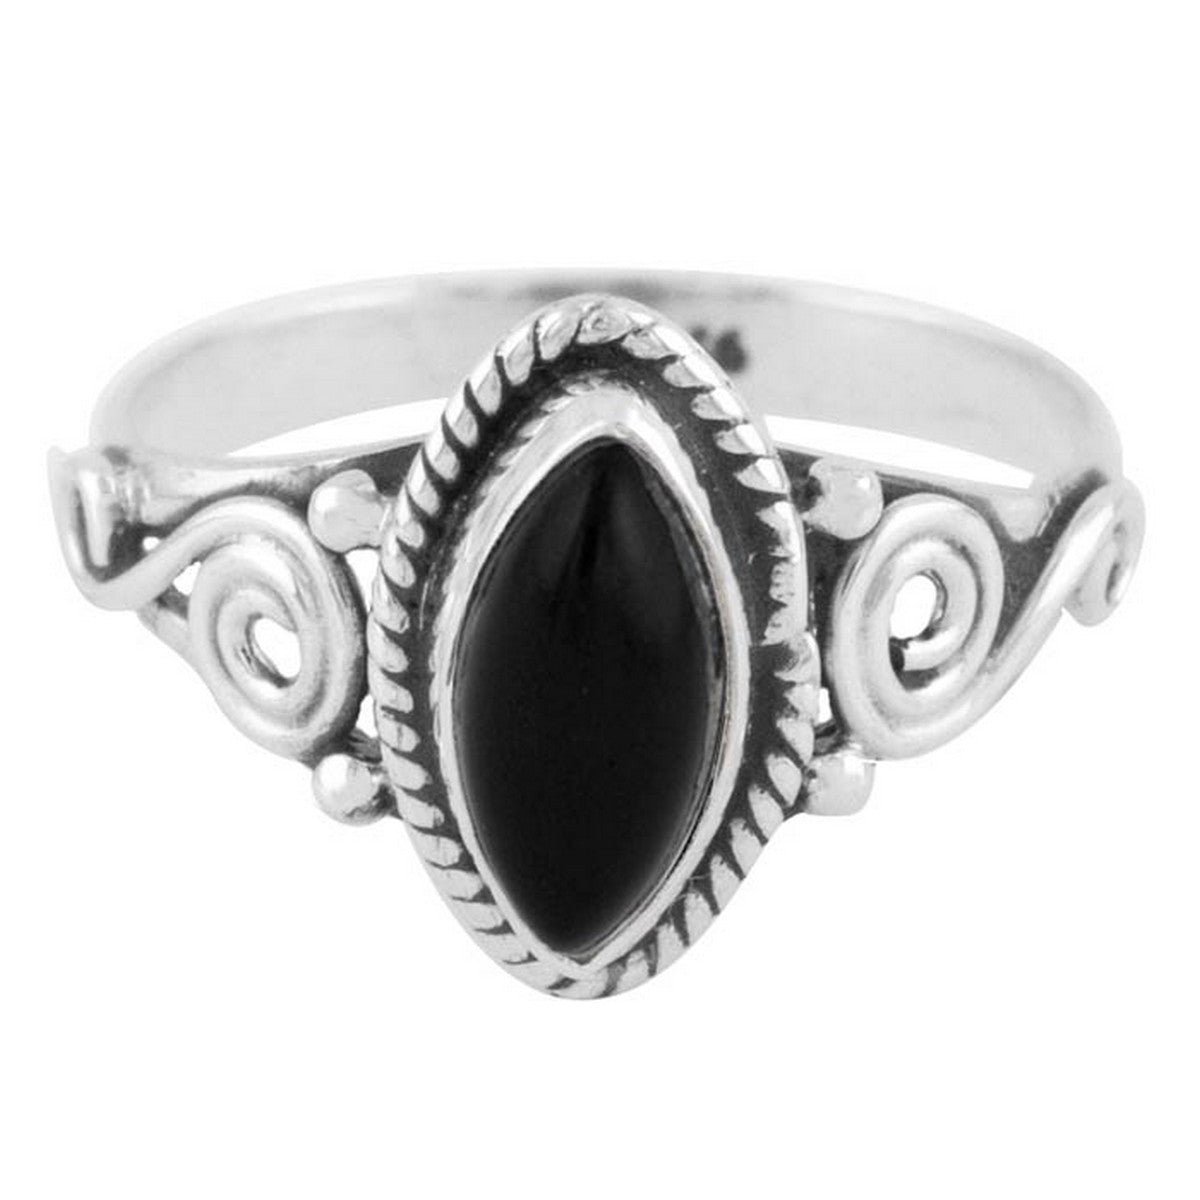 Jewelryz | Kaja | Ring 925 zilver met edelsteen zwarte onyx | 18.00 mm / maat 57